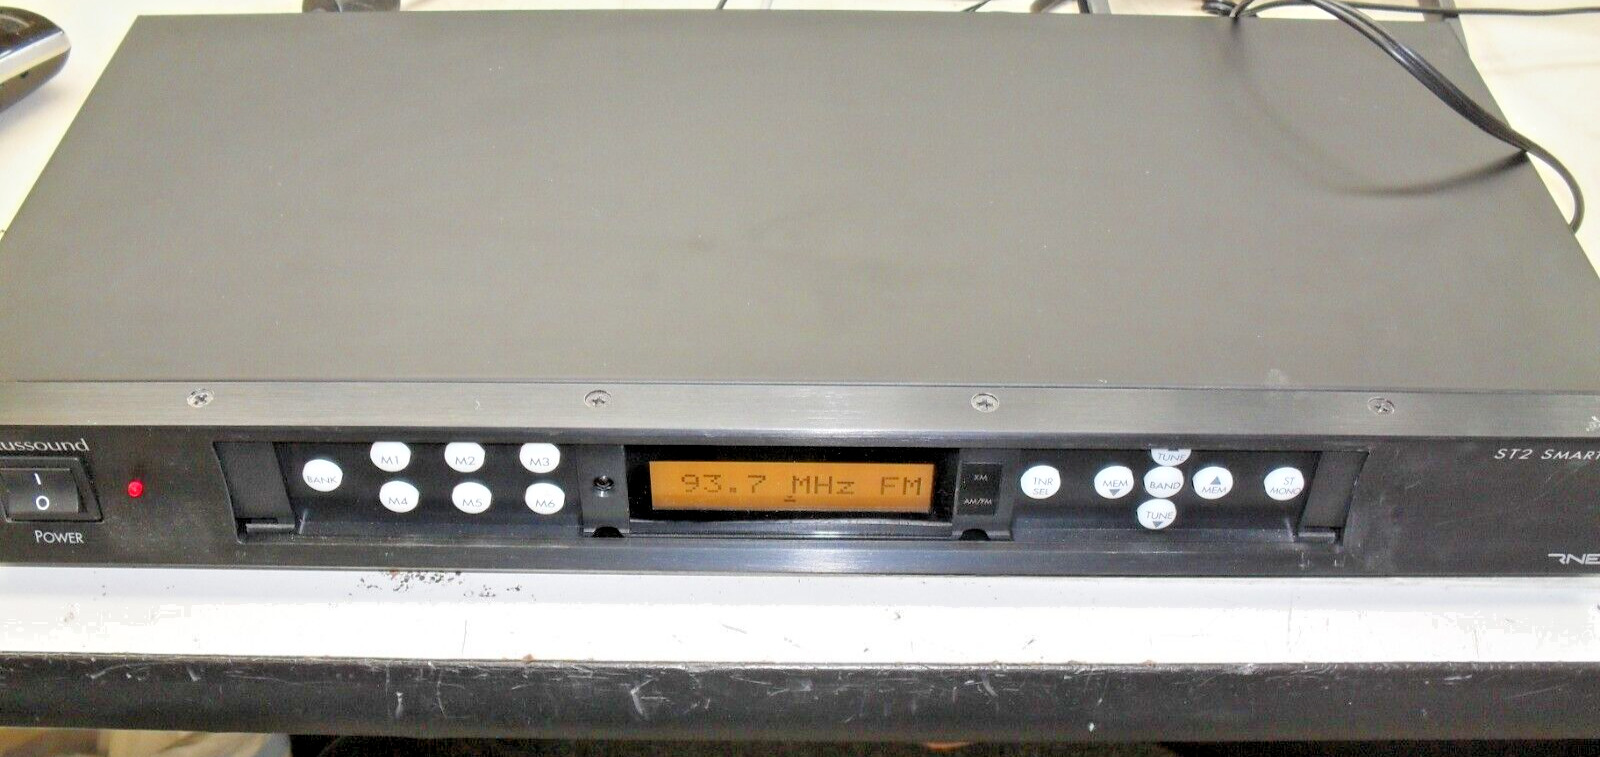 Russound ST2 ST2S Smart Tuner XM Radio with remote